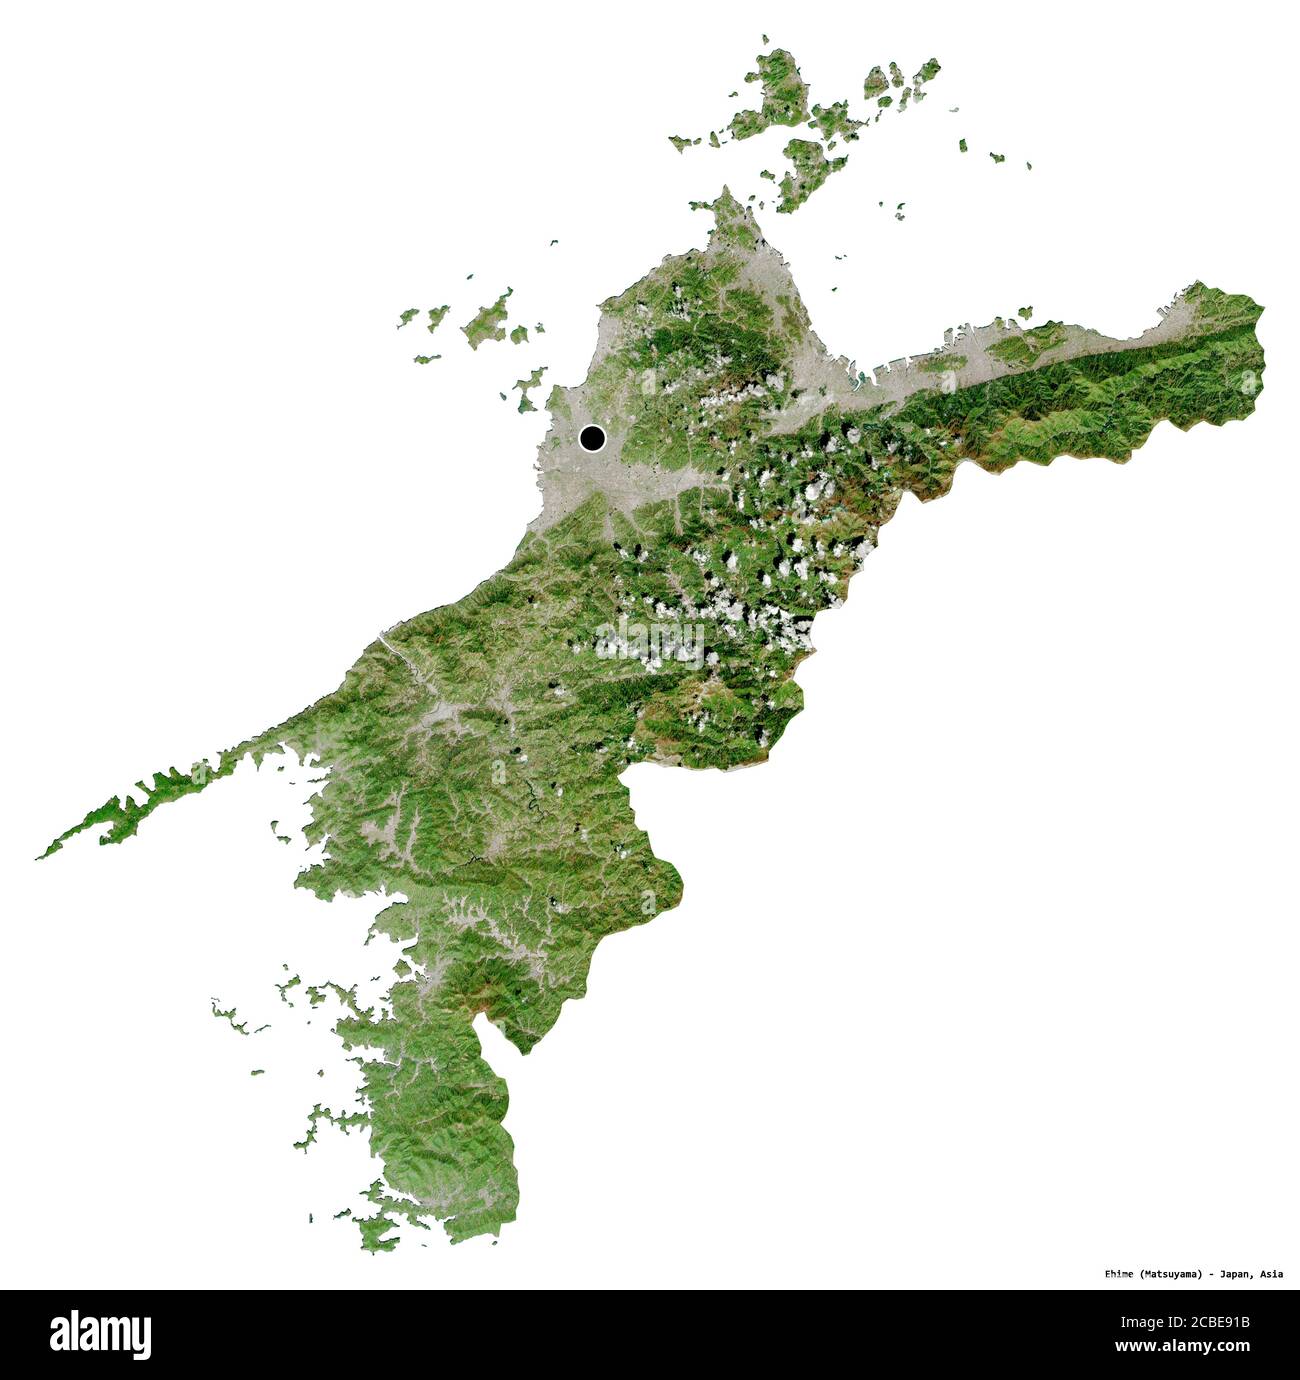 Forme d'Ehime, préfecture du Japon, avec sa capitale isolée sur fond blanc. Imagerie satellite. Rendu 3D Banque D'Images